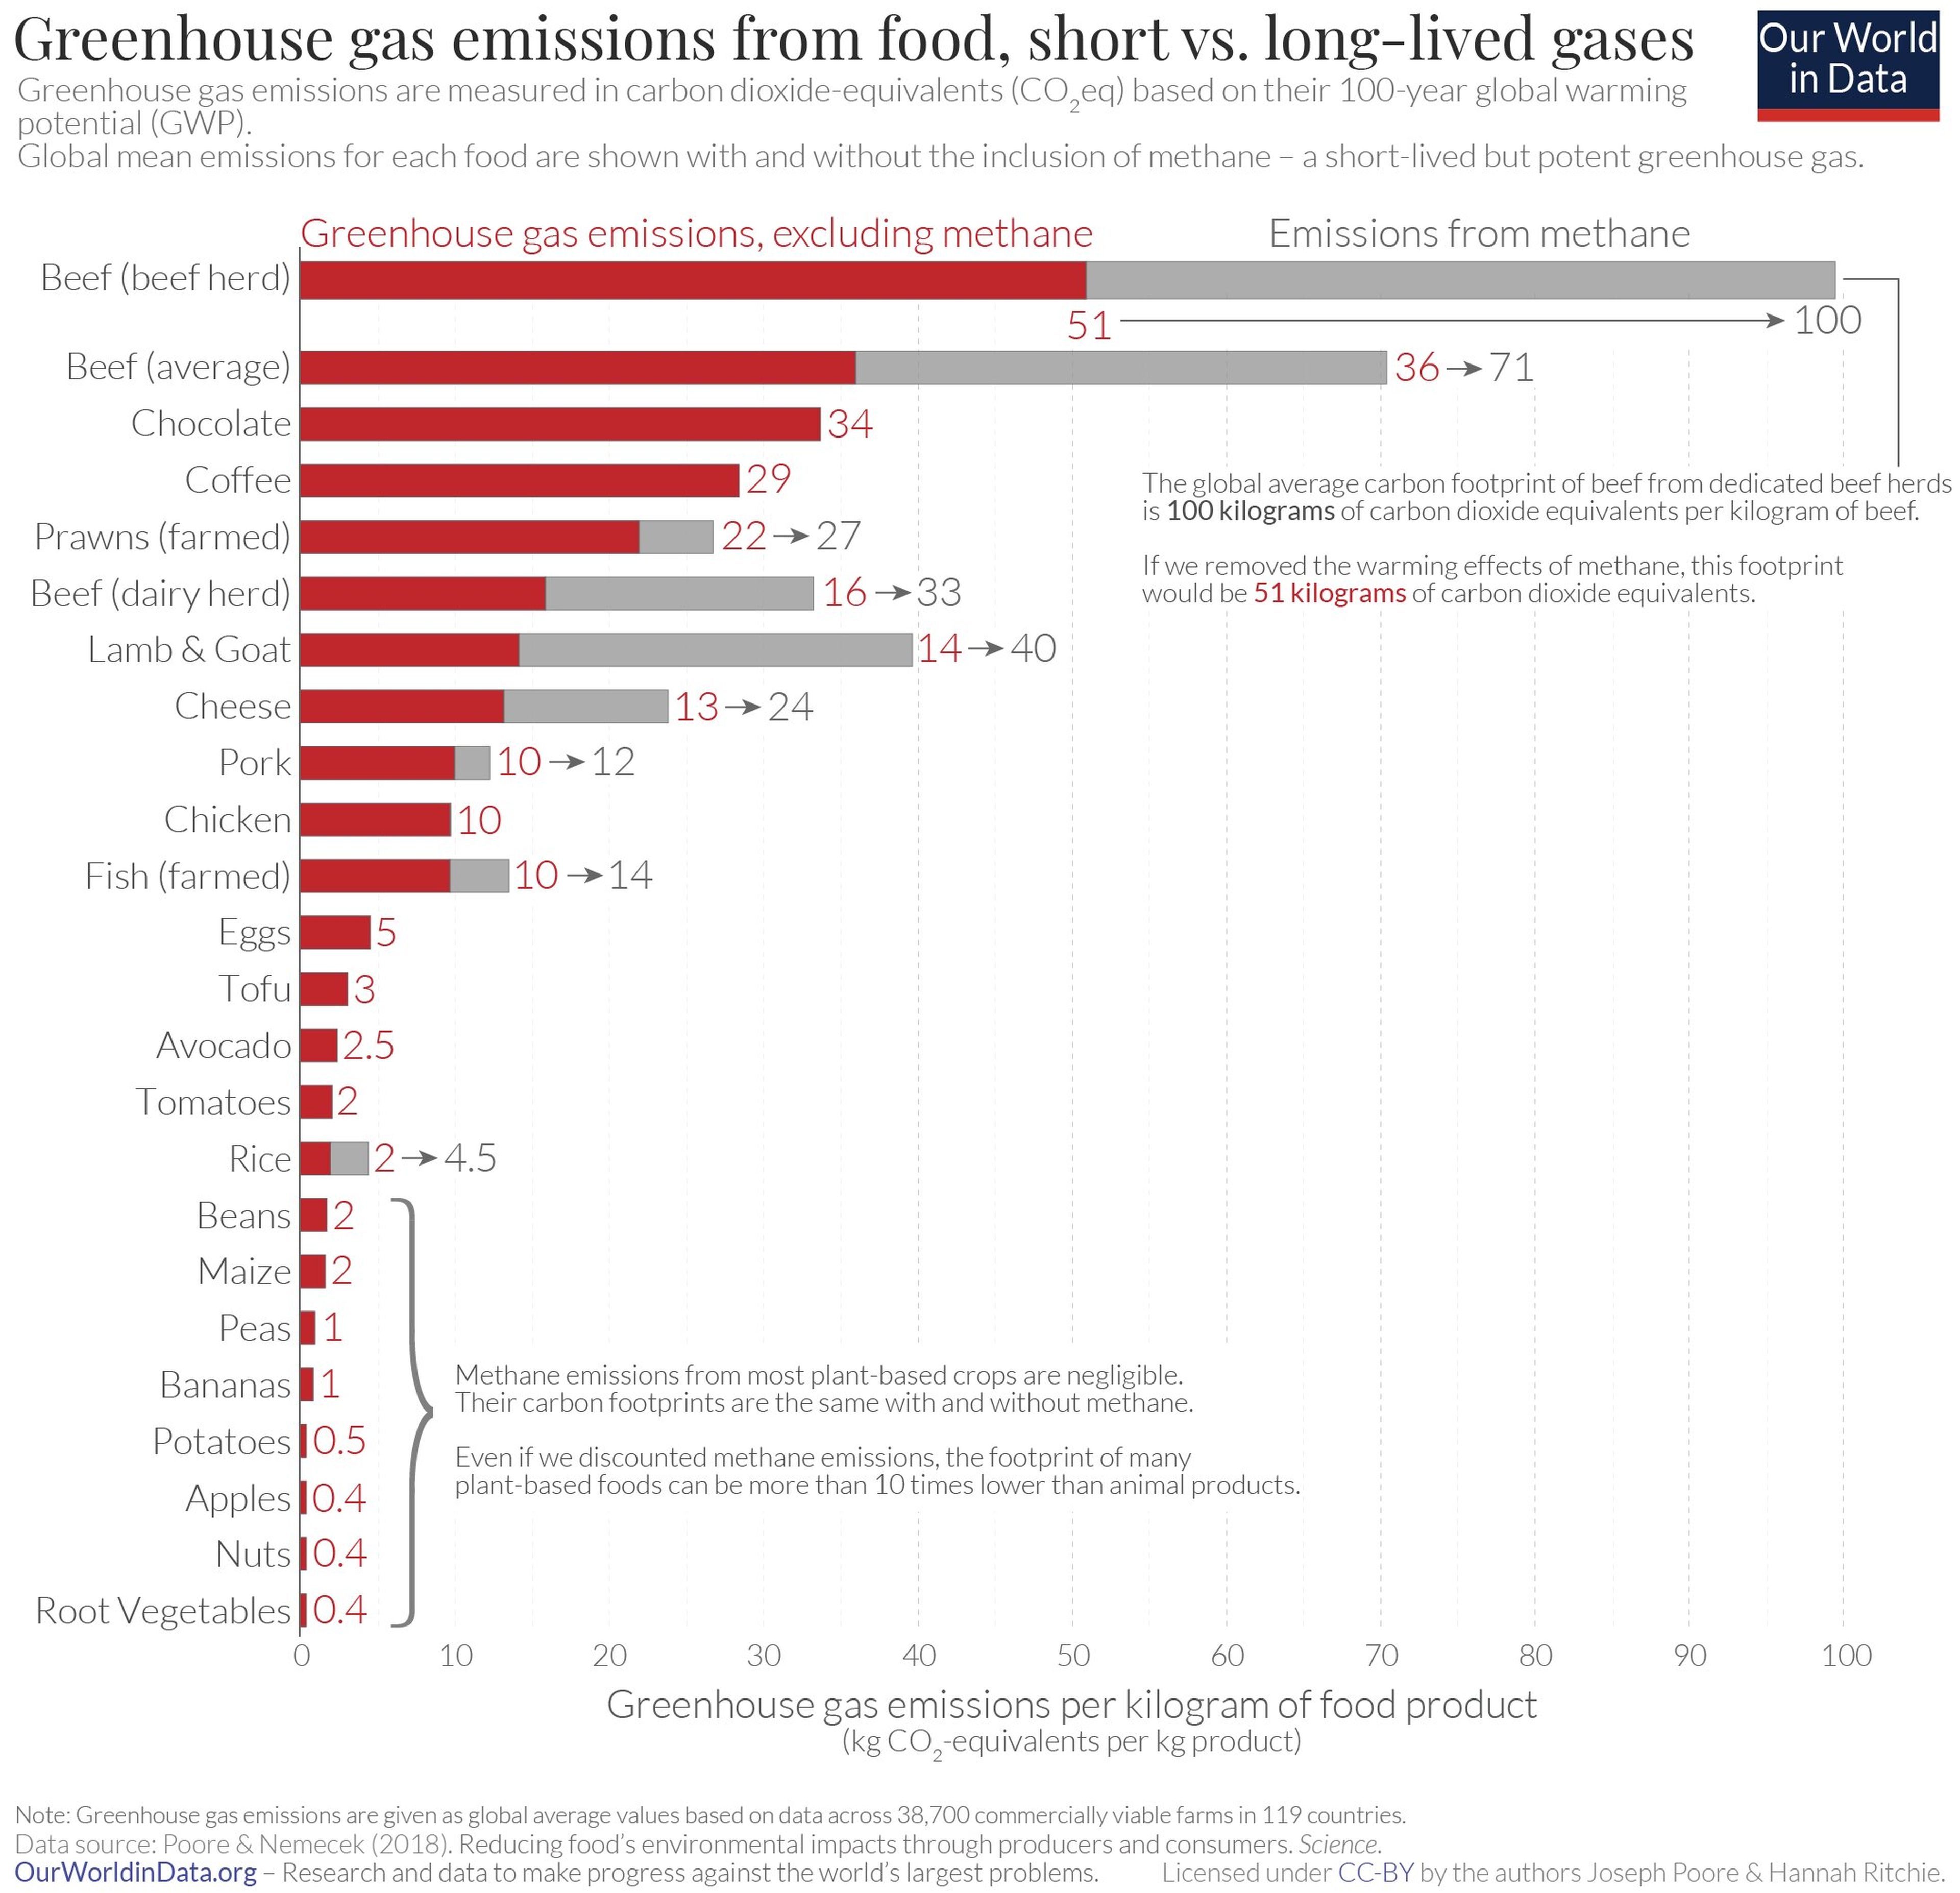 Emisiones contaminantes en kilogramos por kilogramo de producto alimenticio producido.